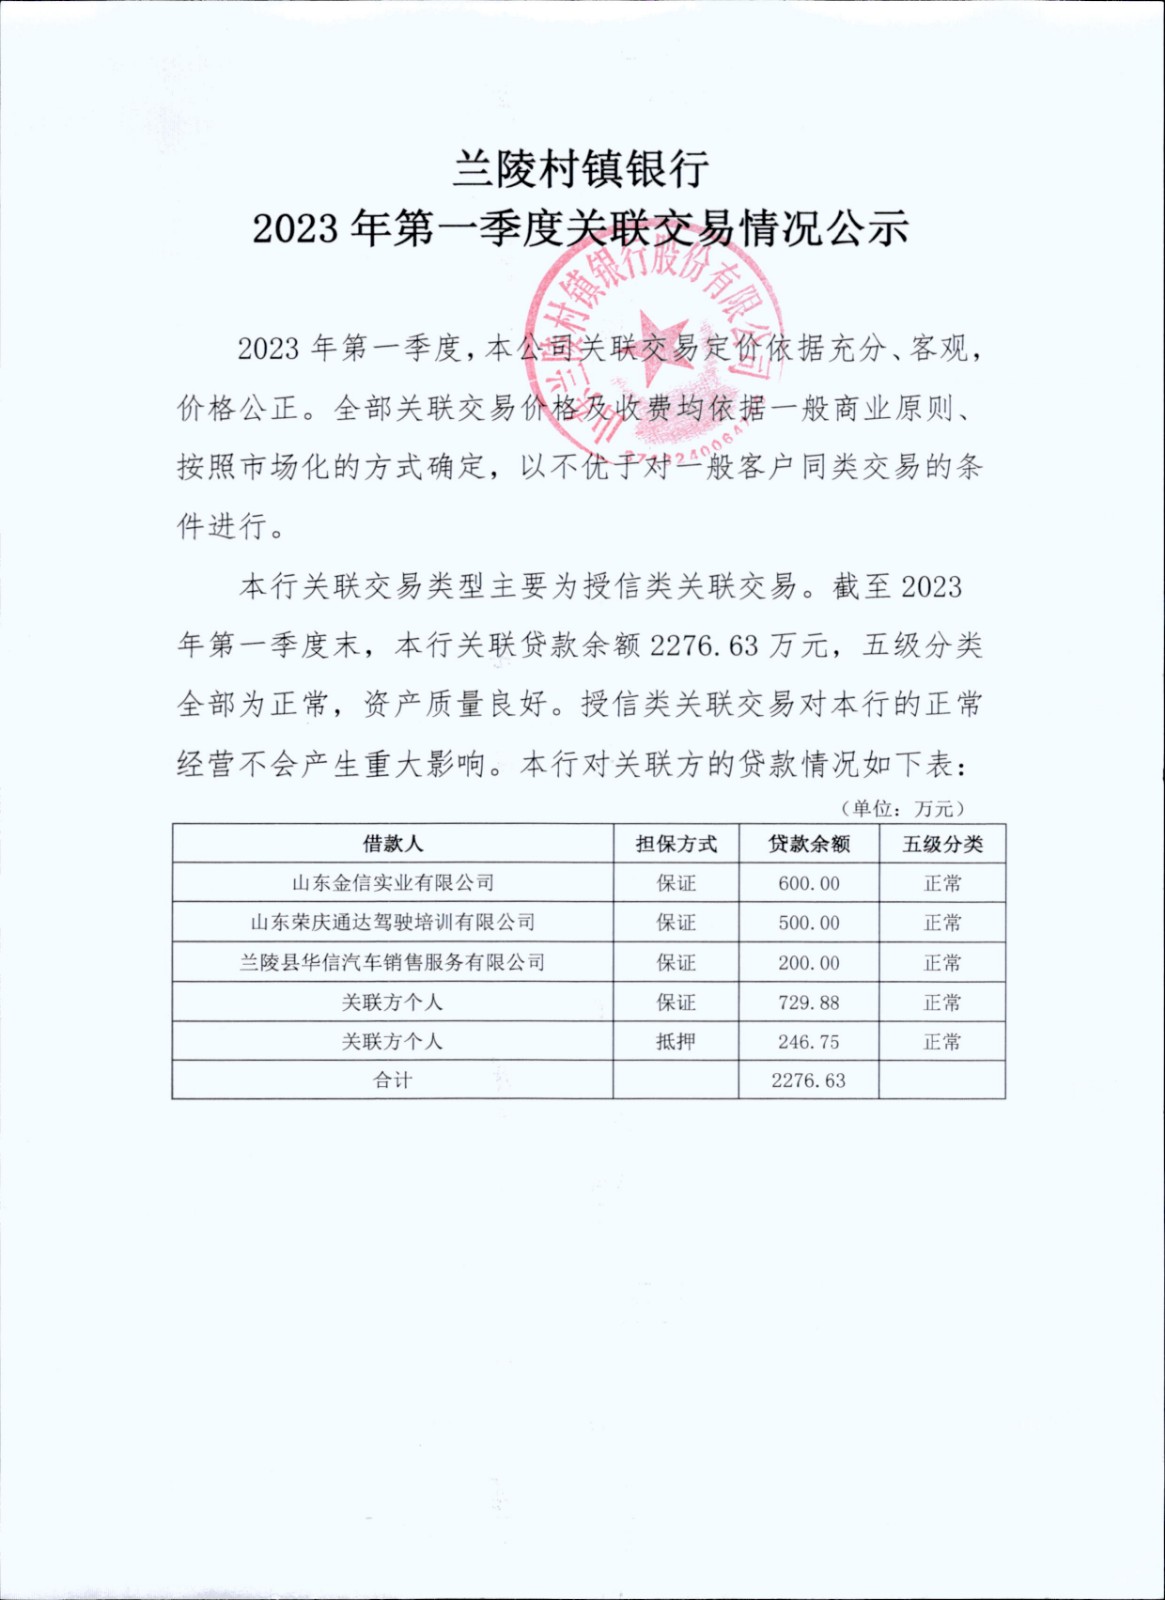 兰陵村镇银行2023年第一季度关联交易情况公示